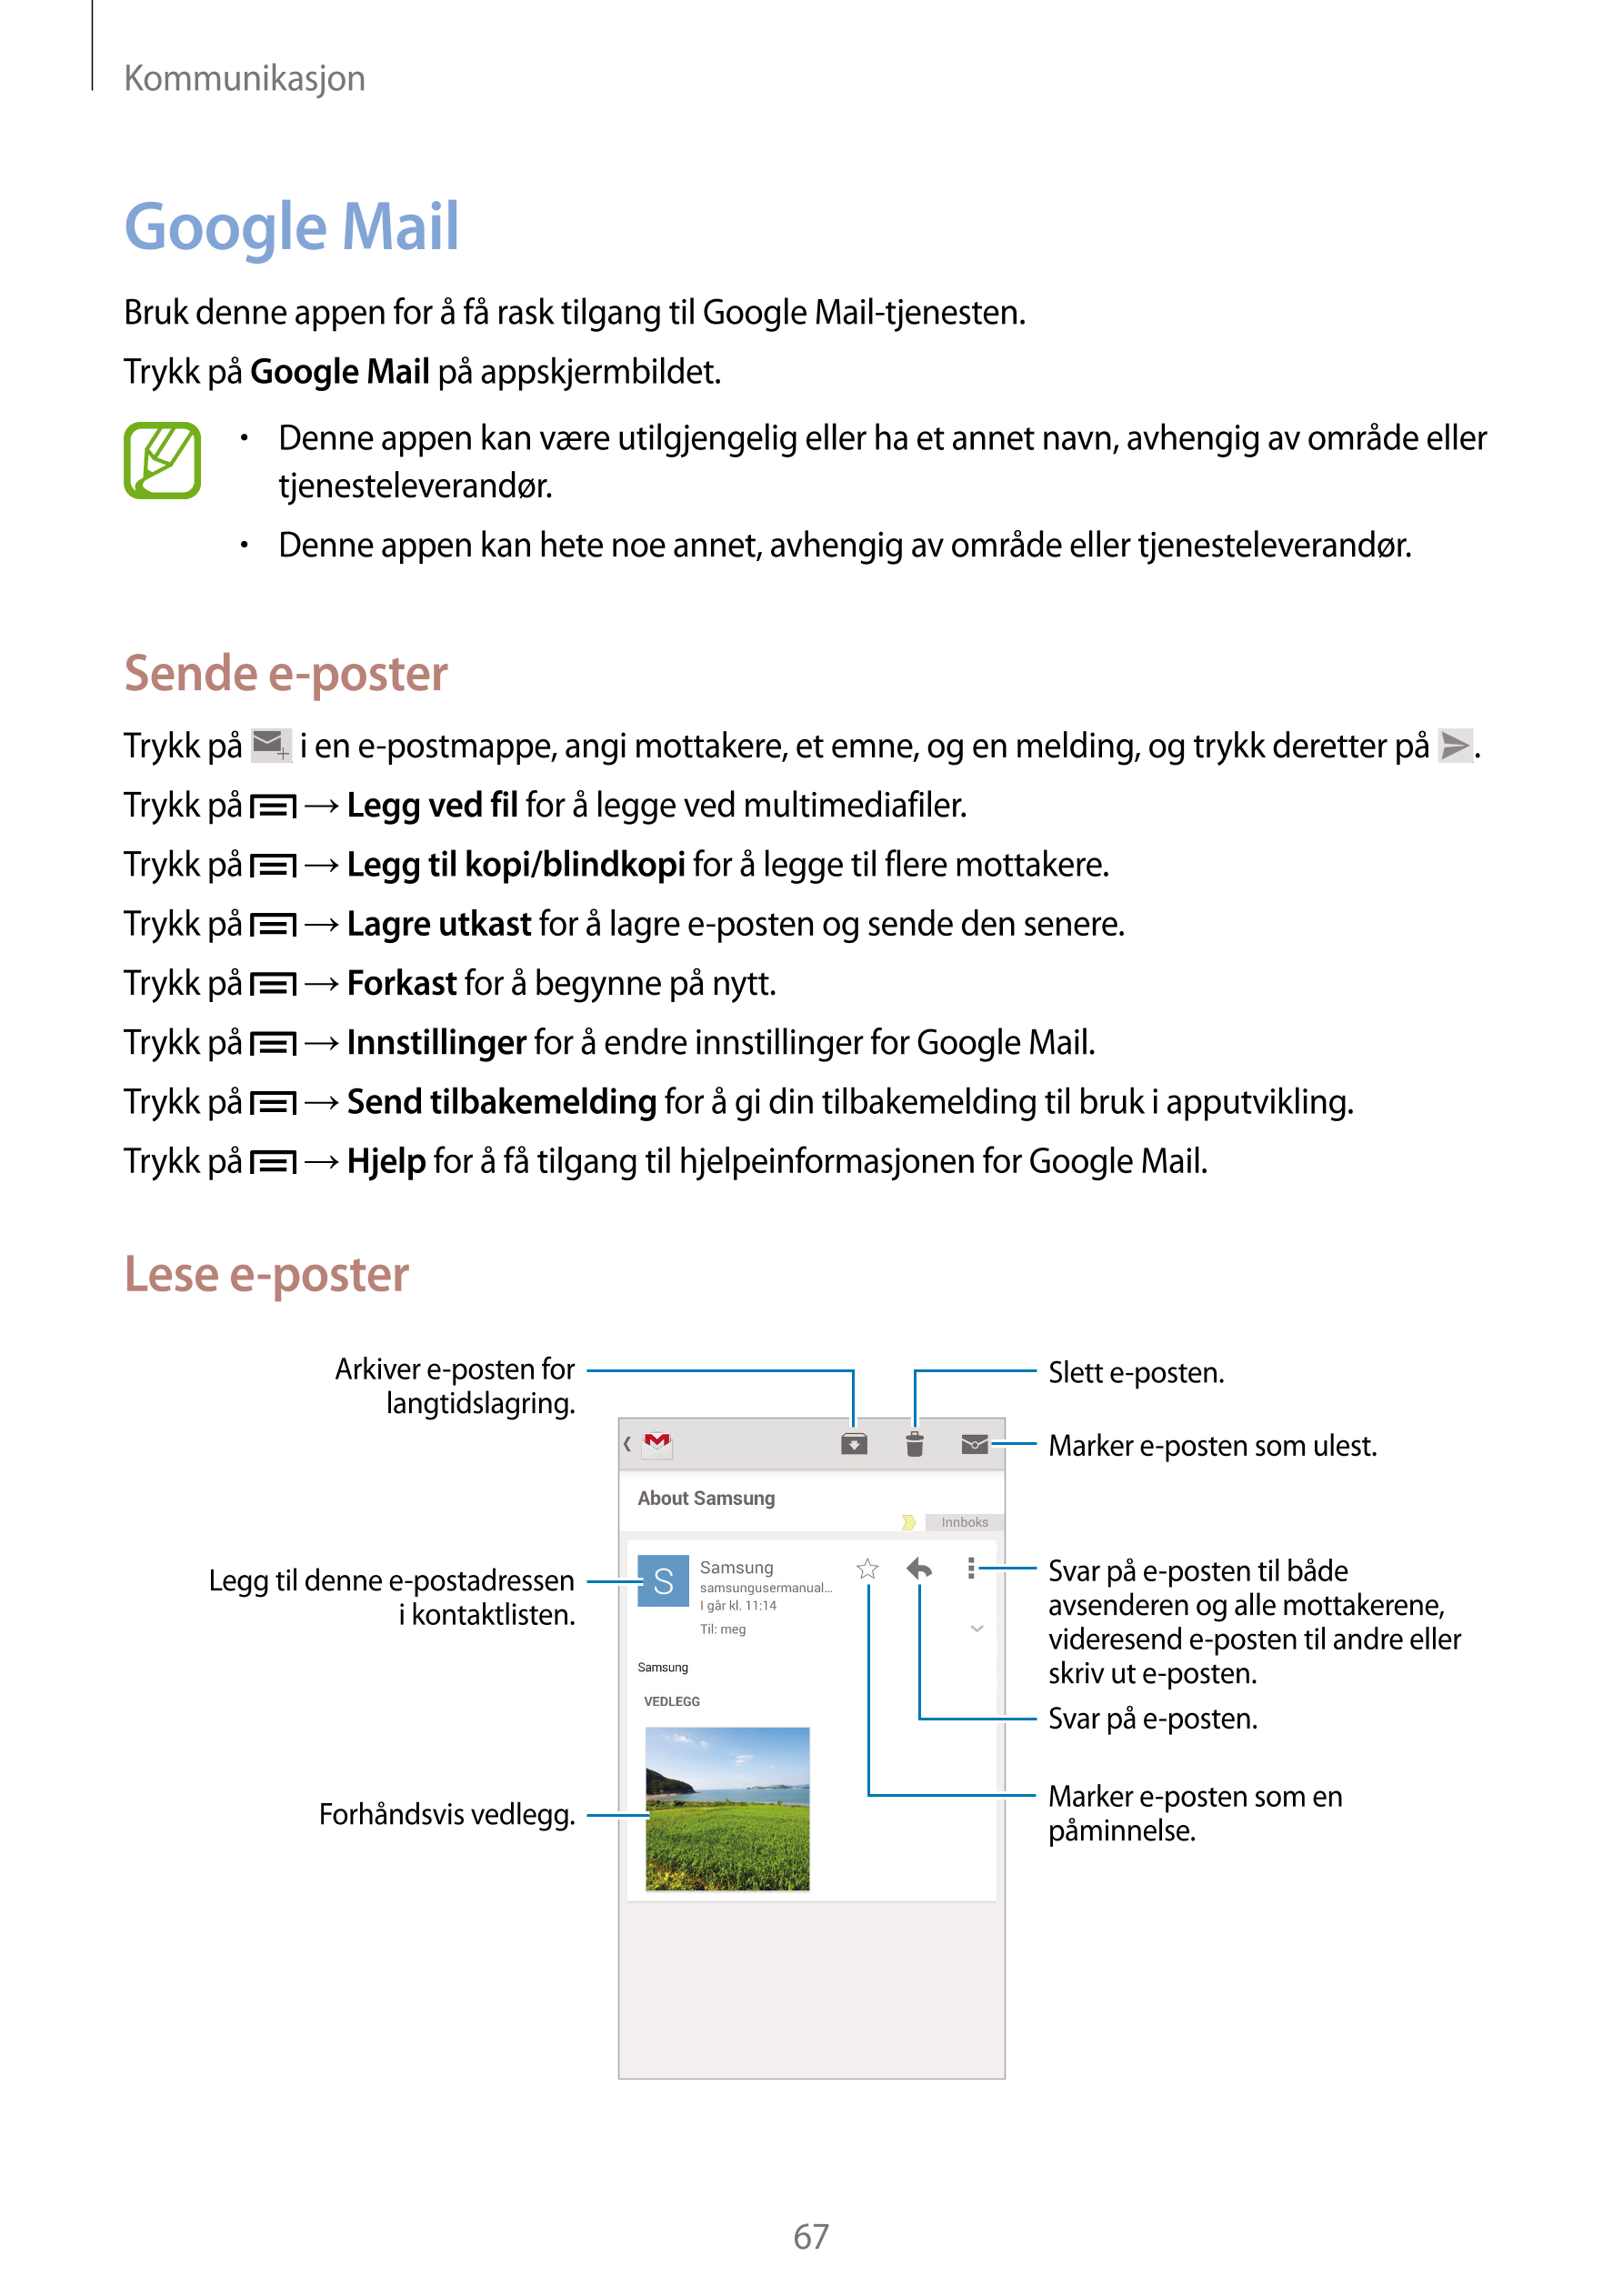 Kommunikasjon
Google Mail
Bruk denne appen for å få rask tilgang til Google Mail-tjenesten.
Trykk på  Google Mail på appskjermbi